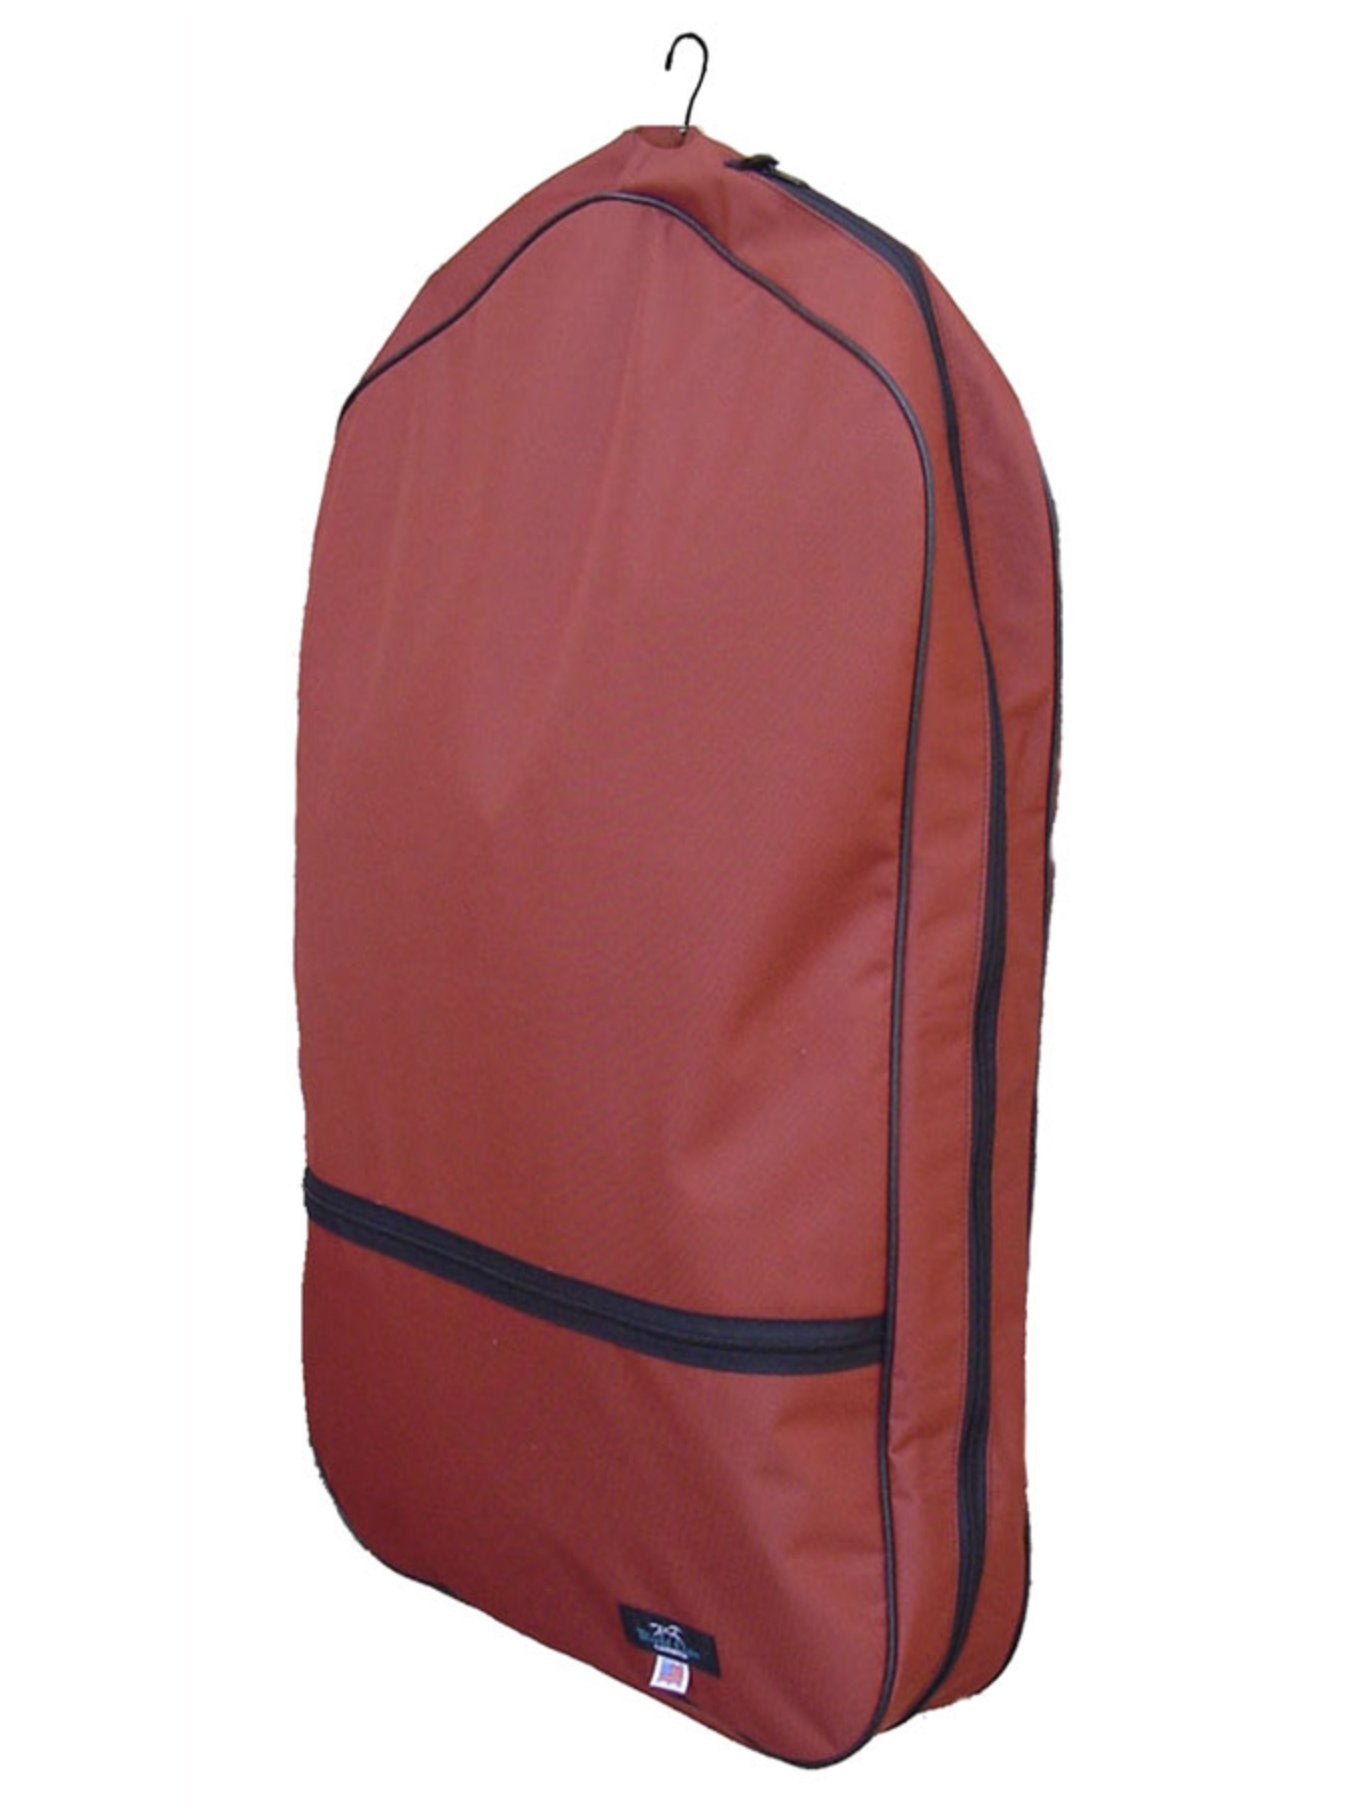 World Class Equine Garment Bag - Original and XL